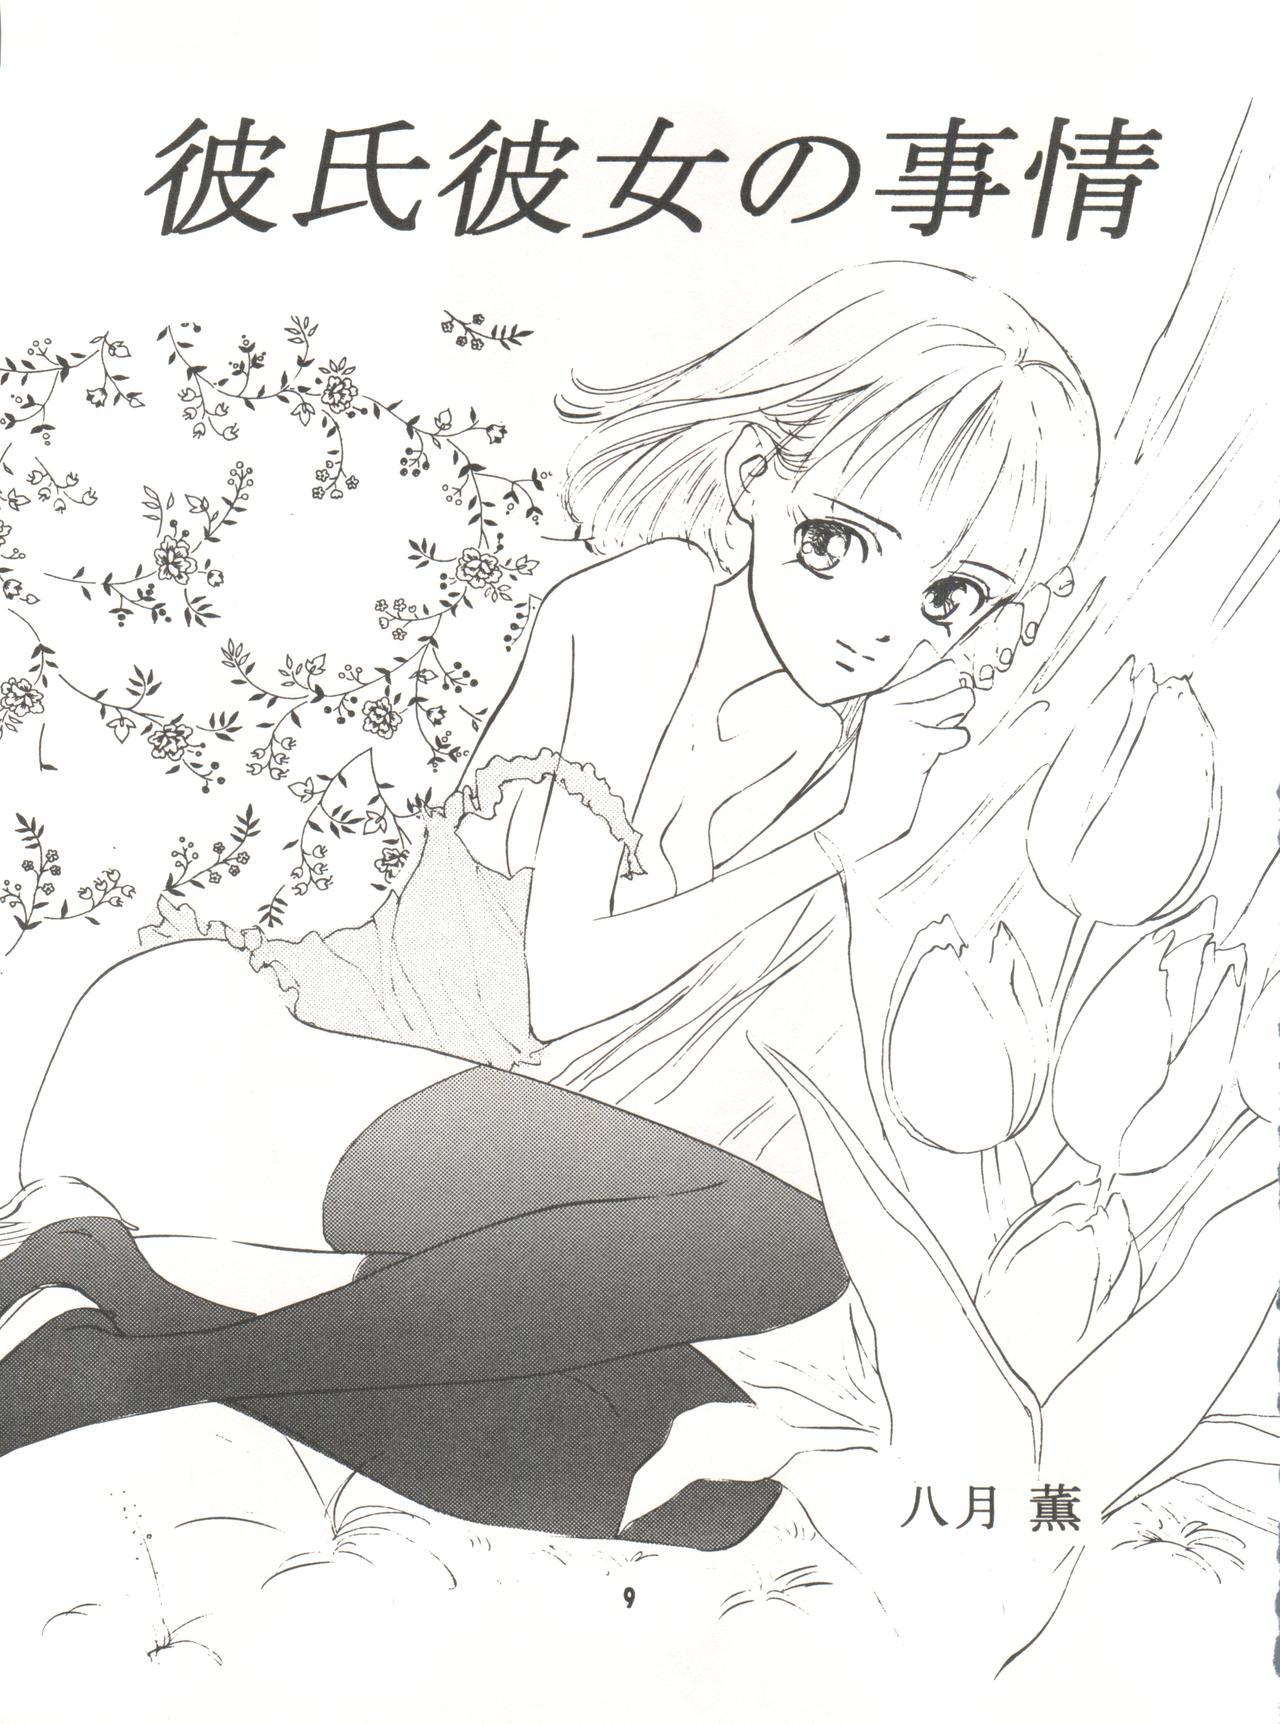 Puto Wanpaku Anime Vol. 9 Kare Kano Tokushuu Kanojo wa... - Kare kano Free Fuck Vidz - Page 11